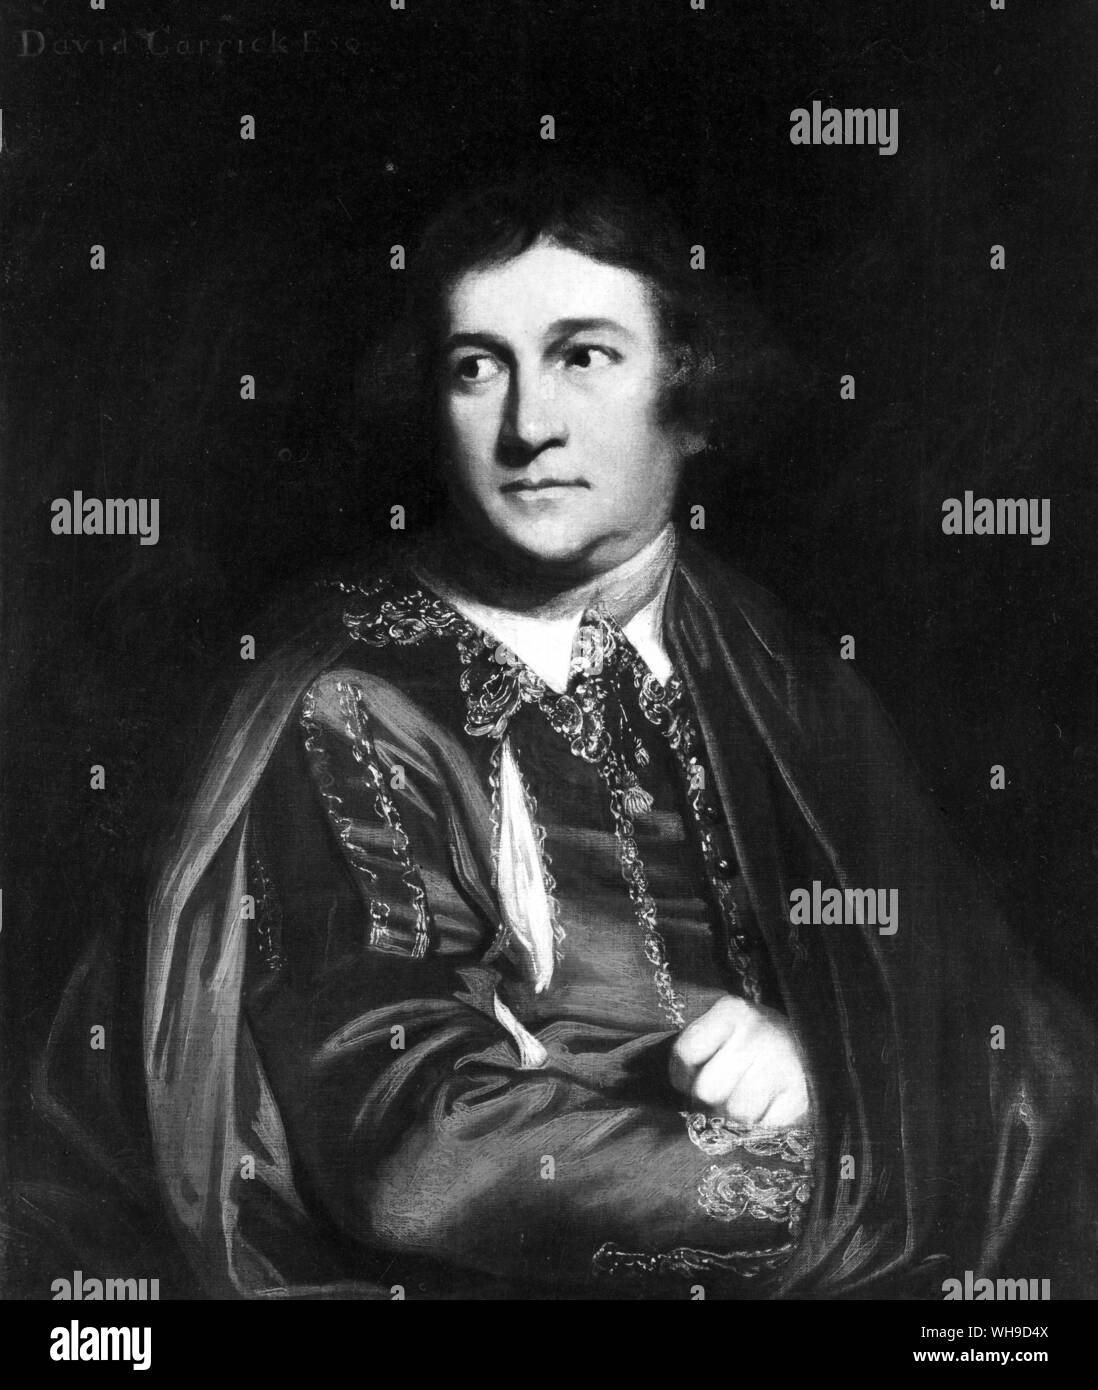 David Garrick (1717-1779). El actor y director de teatro en inglés. En 1747, se convirtió en el licenciatario conjunta de la Drury Lane Theatre de Londres. Foto de stock